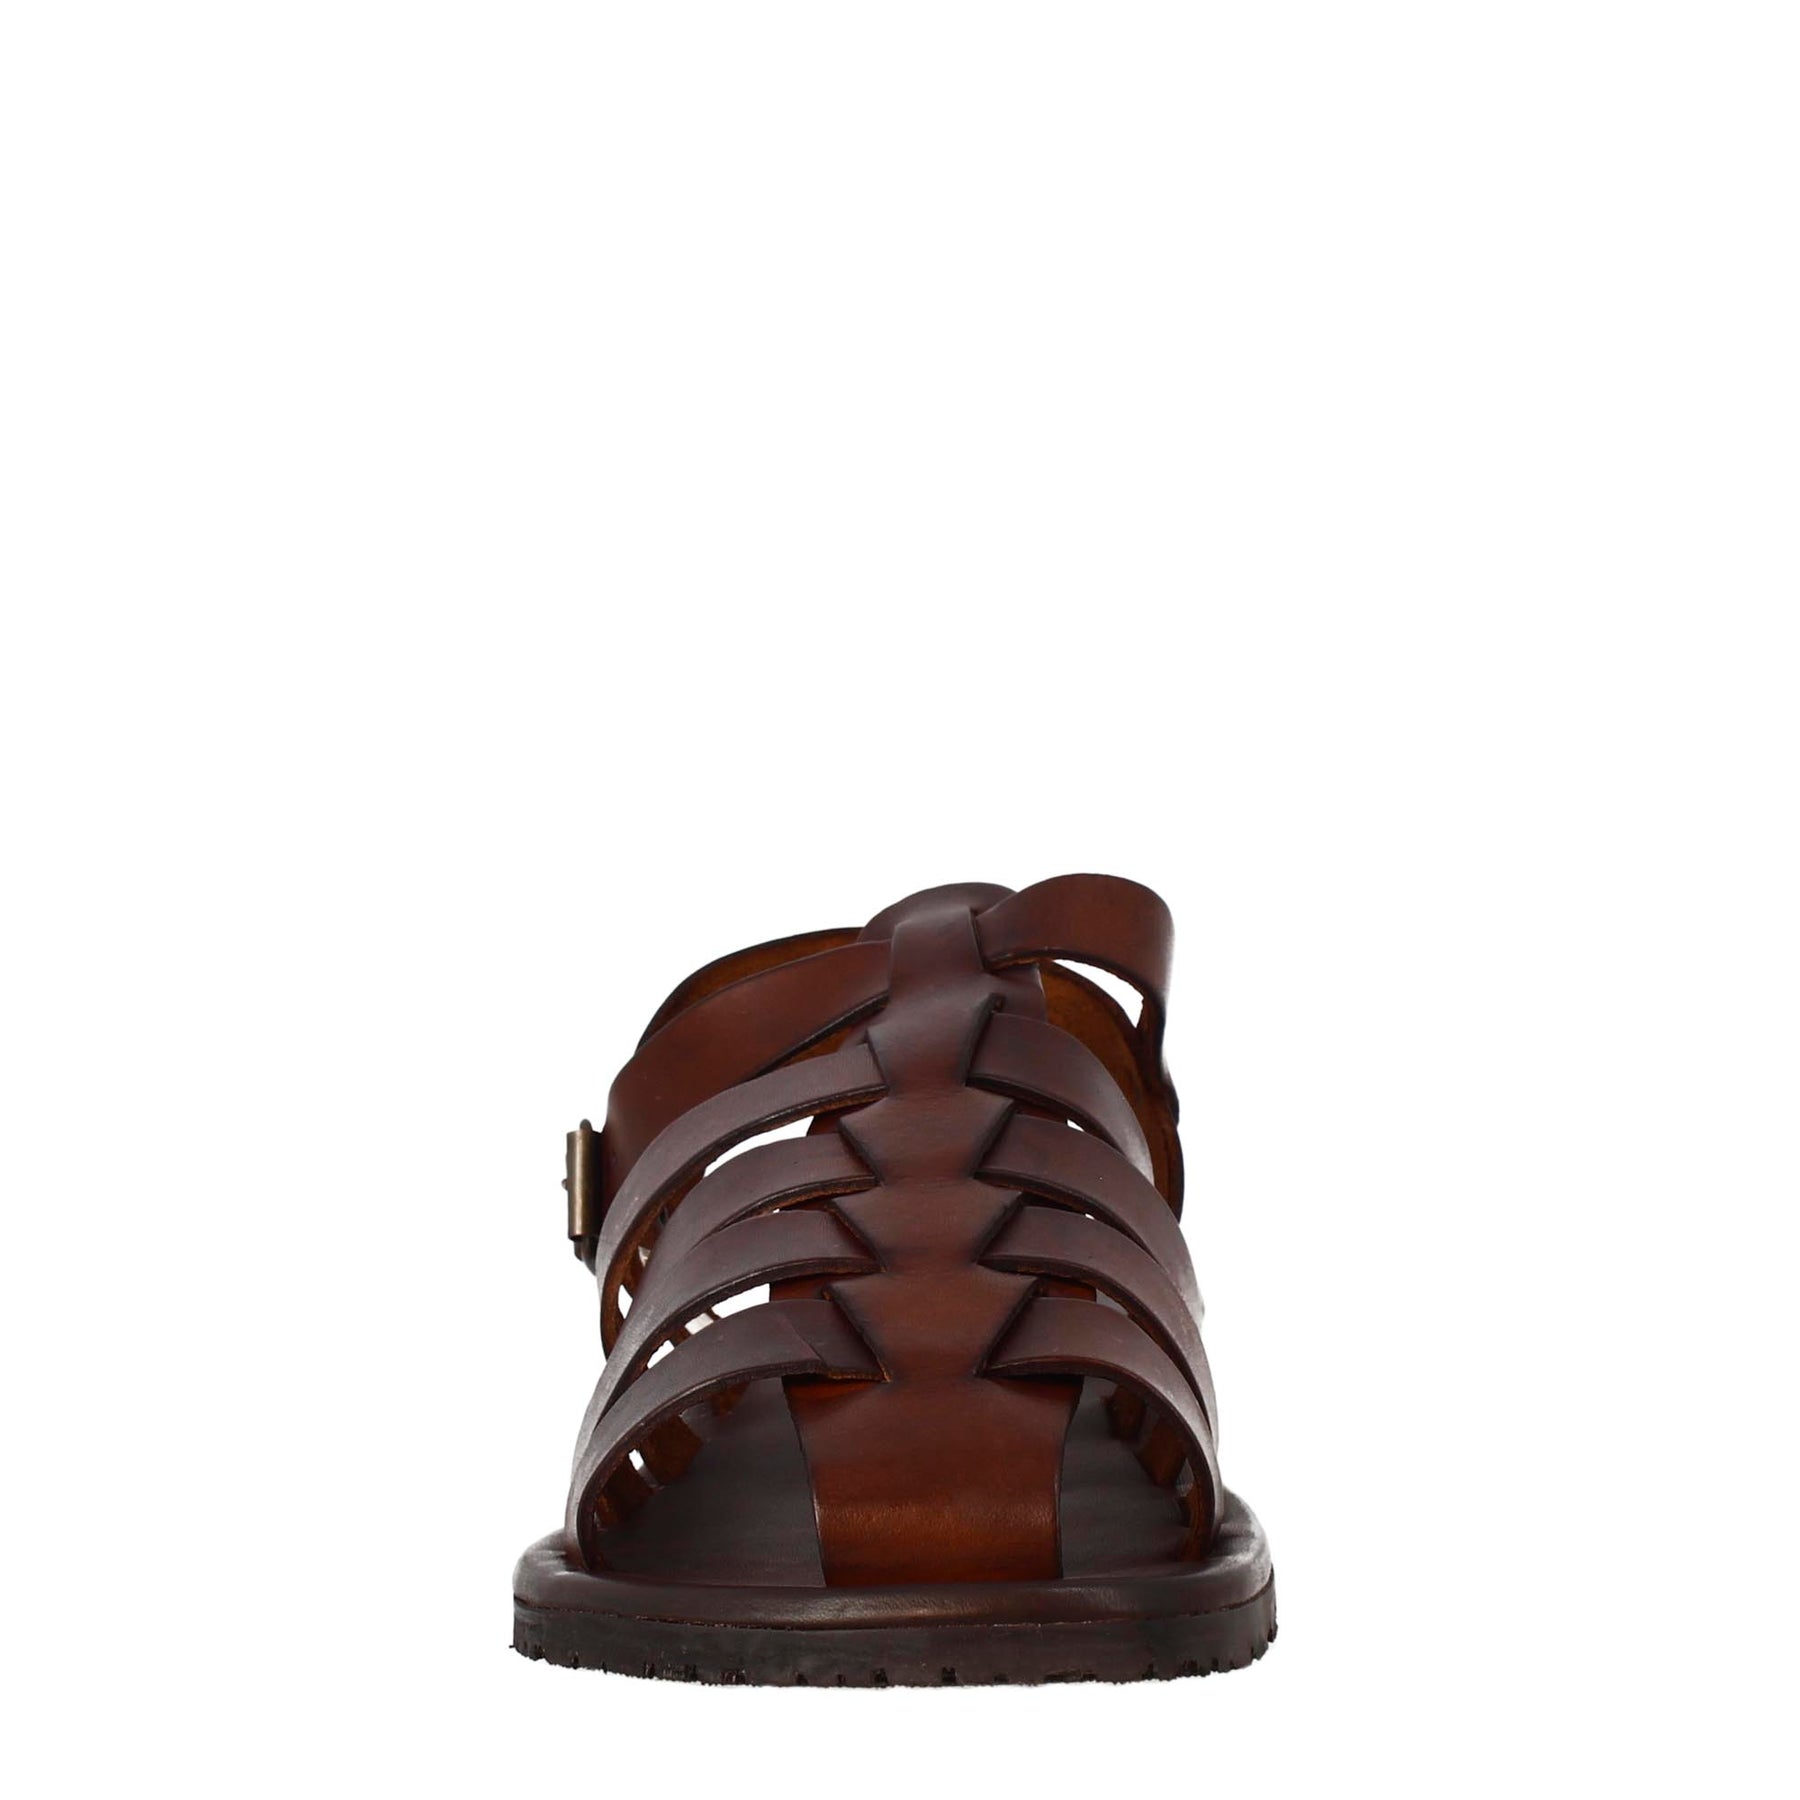 Sandali francescani da uomo fatti a mano in pelle marrone con cinturino alla caviglia - LeonardoShoes